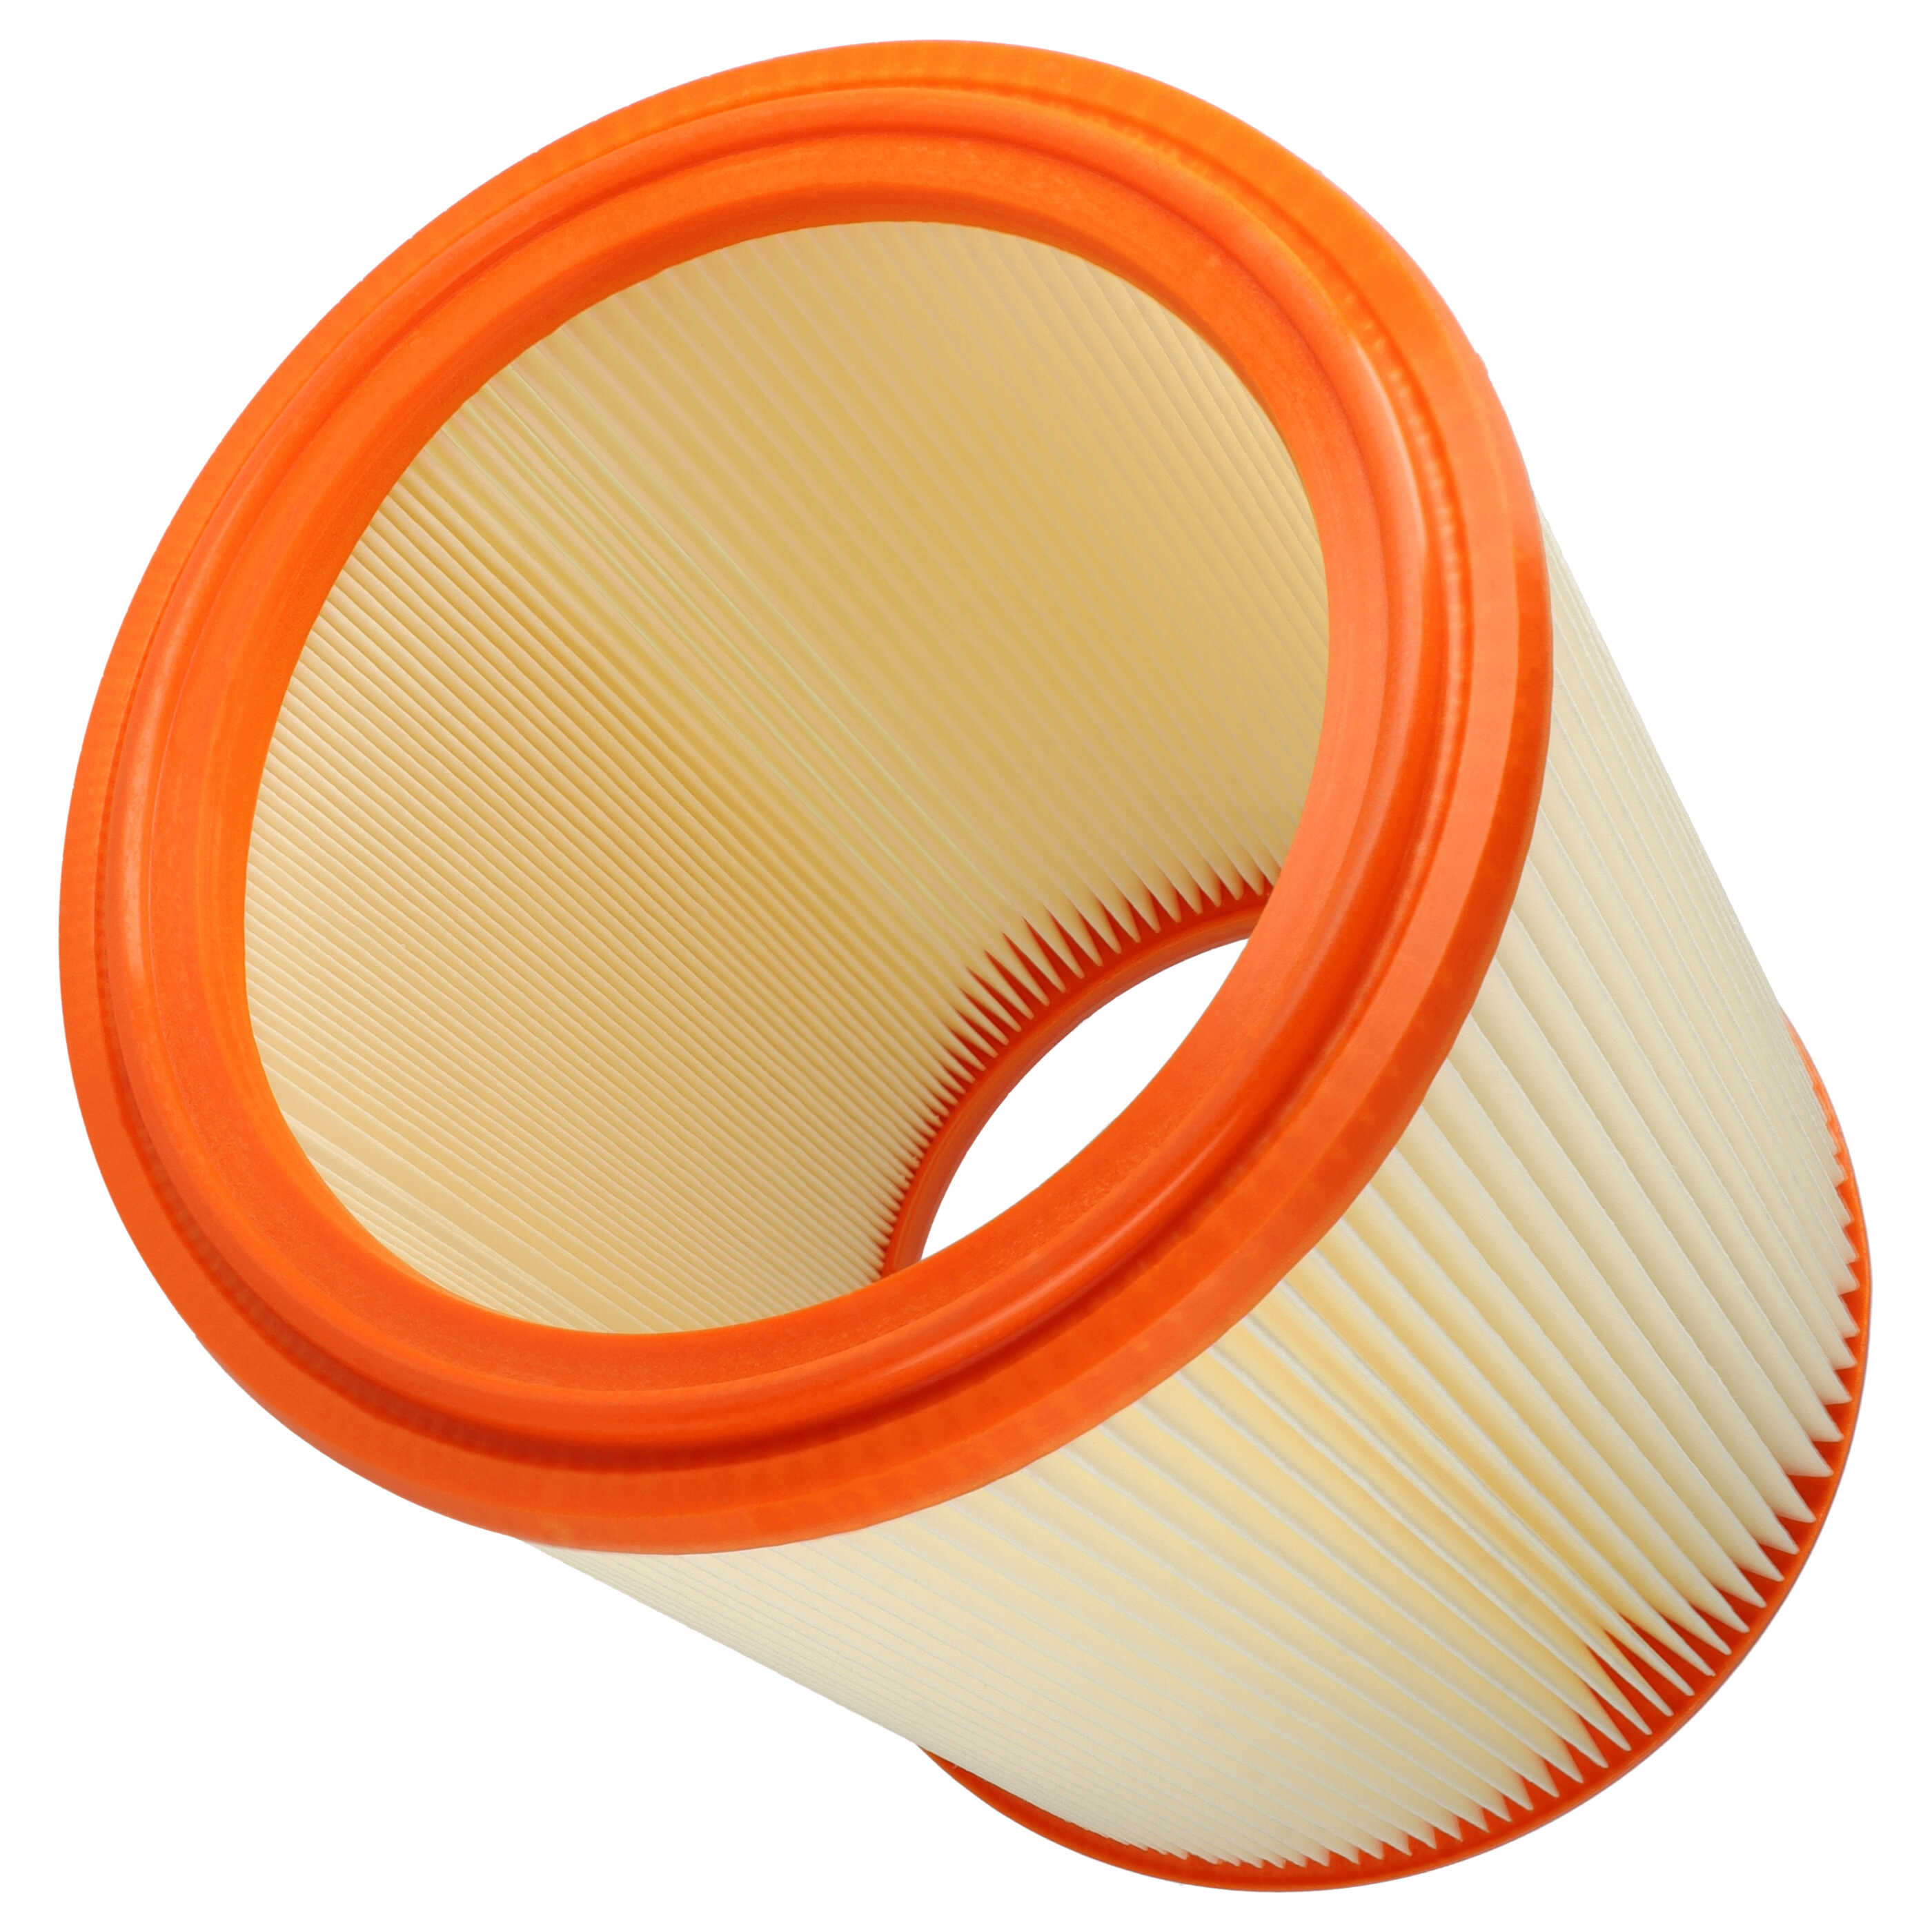 Filtro sostituisce Festool 486241 per aspirapolvere - filtro a lamelle